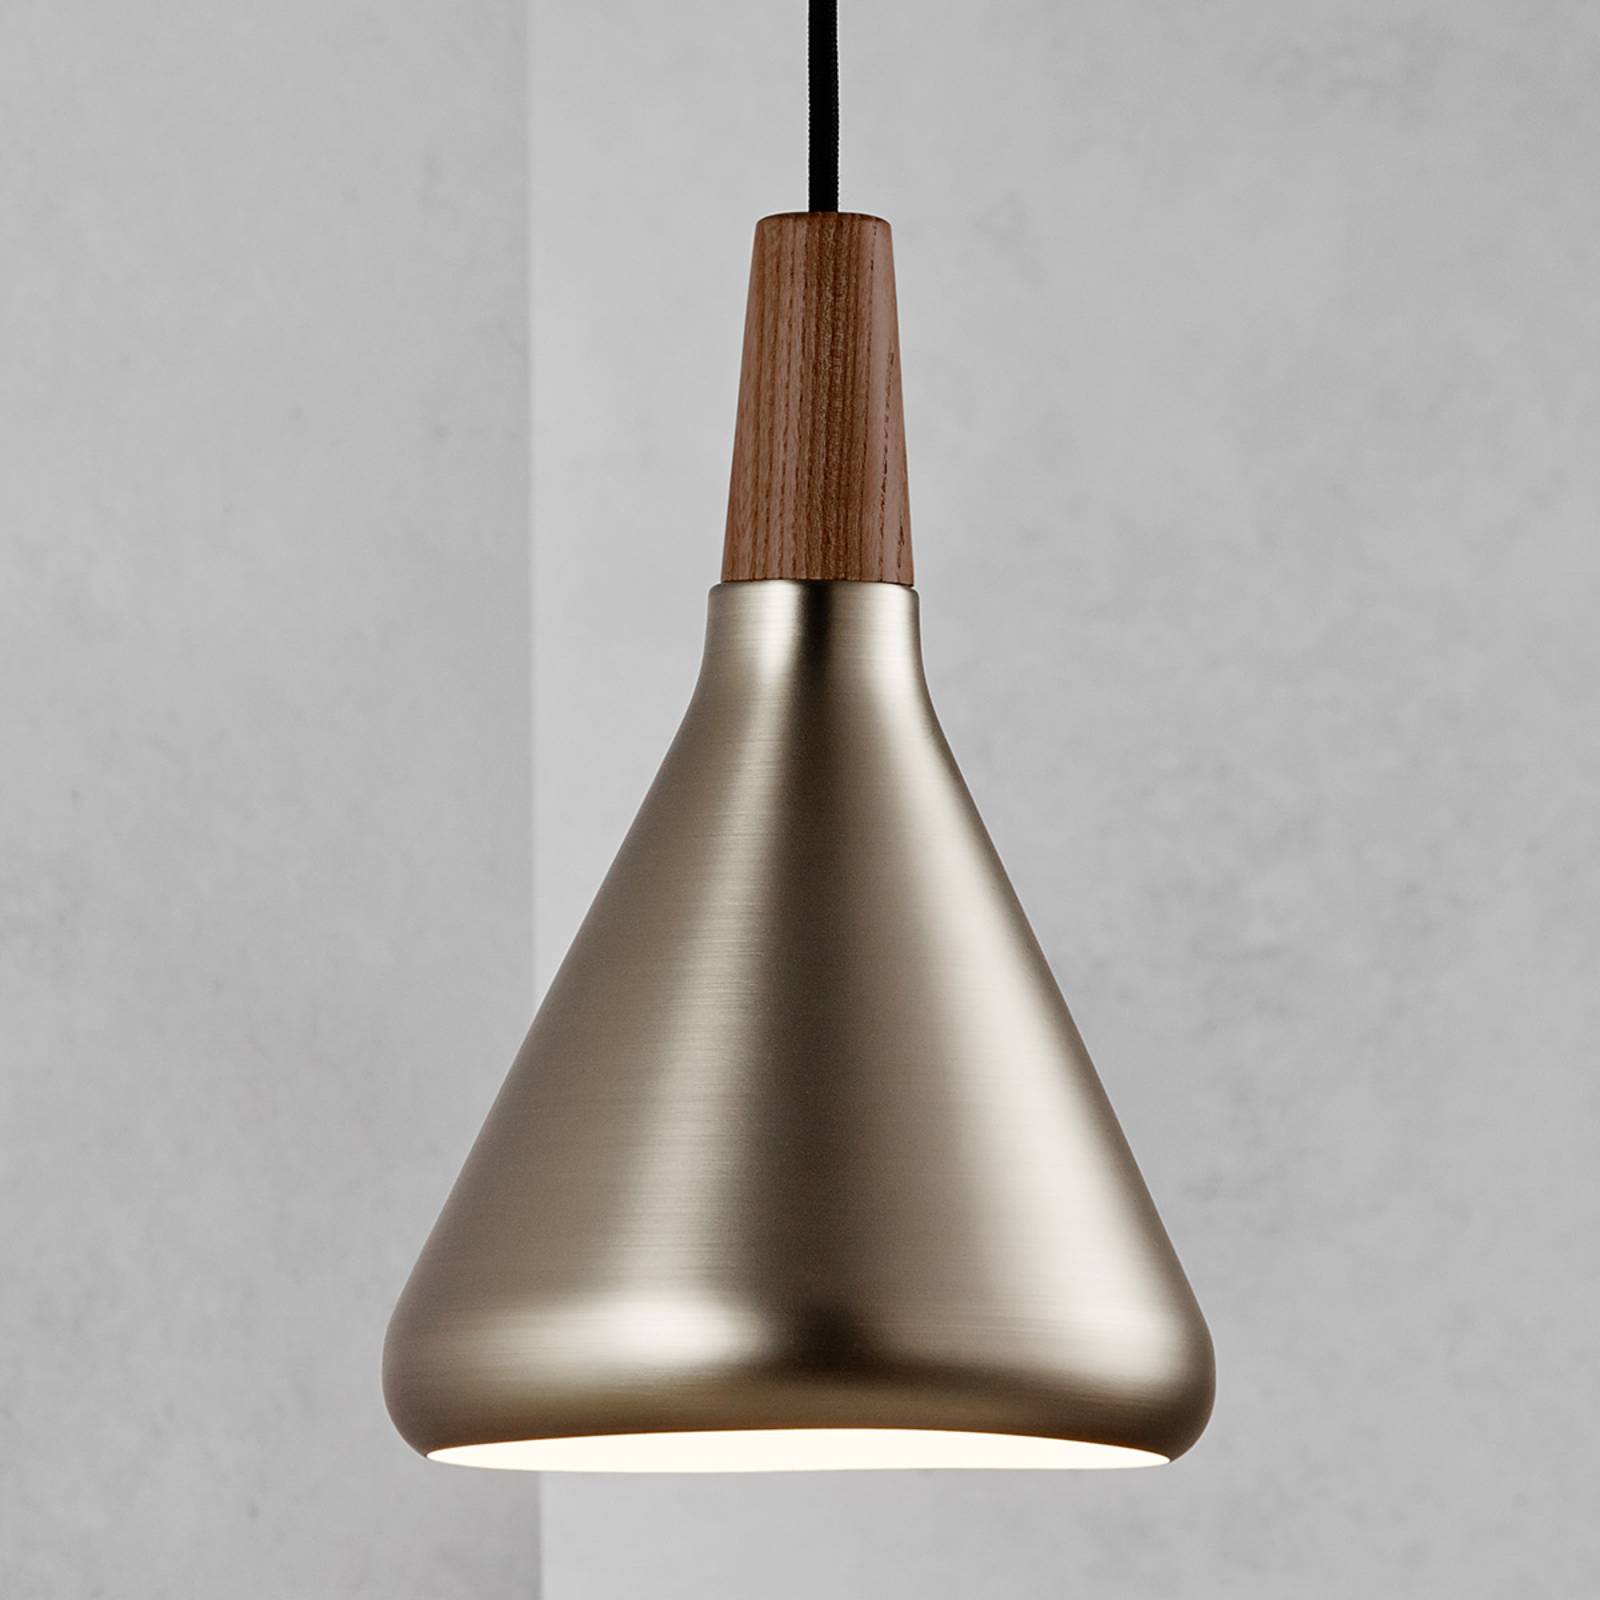 Függő lámpa Nori fémből, acél színű, Ø18 cm